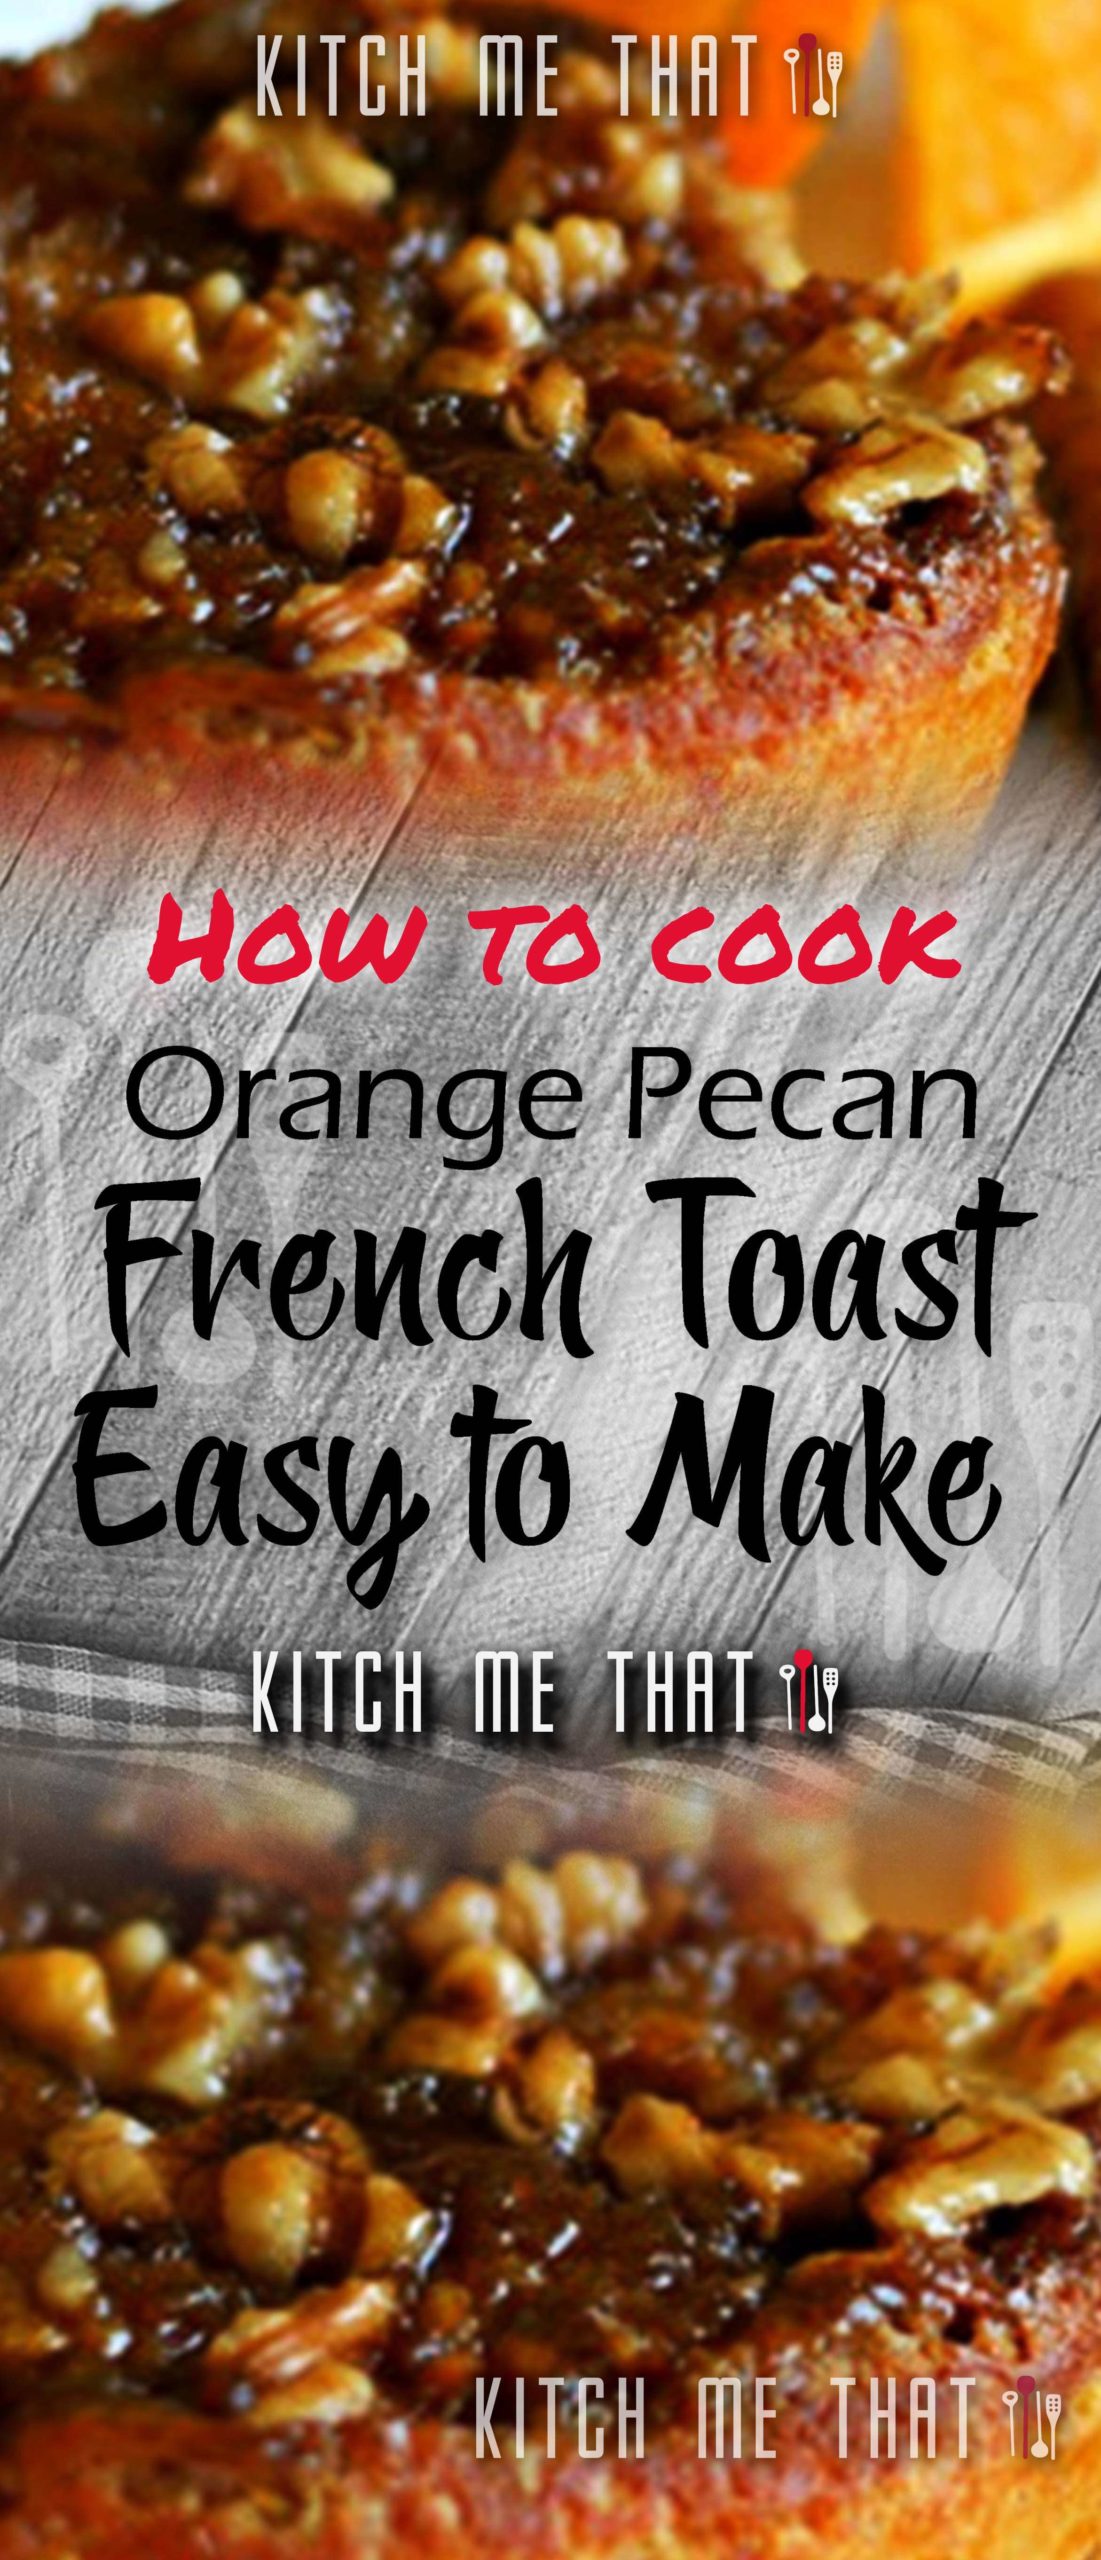 Orange Pecan French Toast